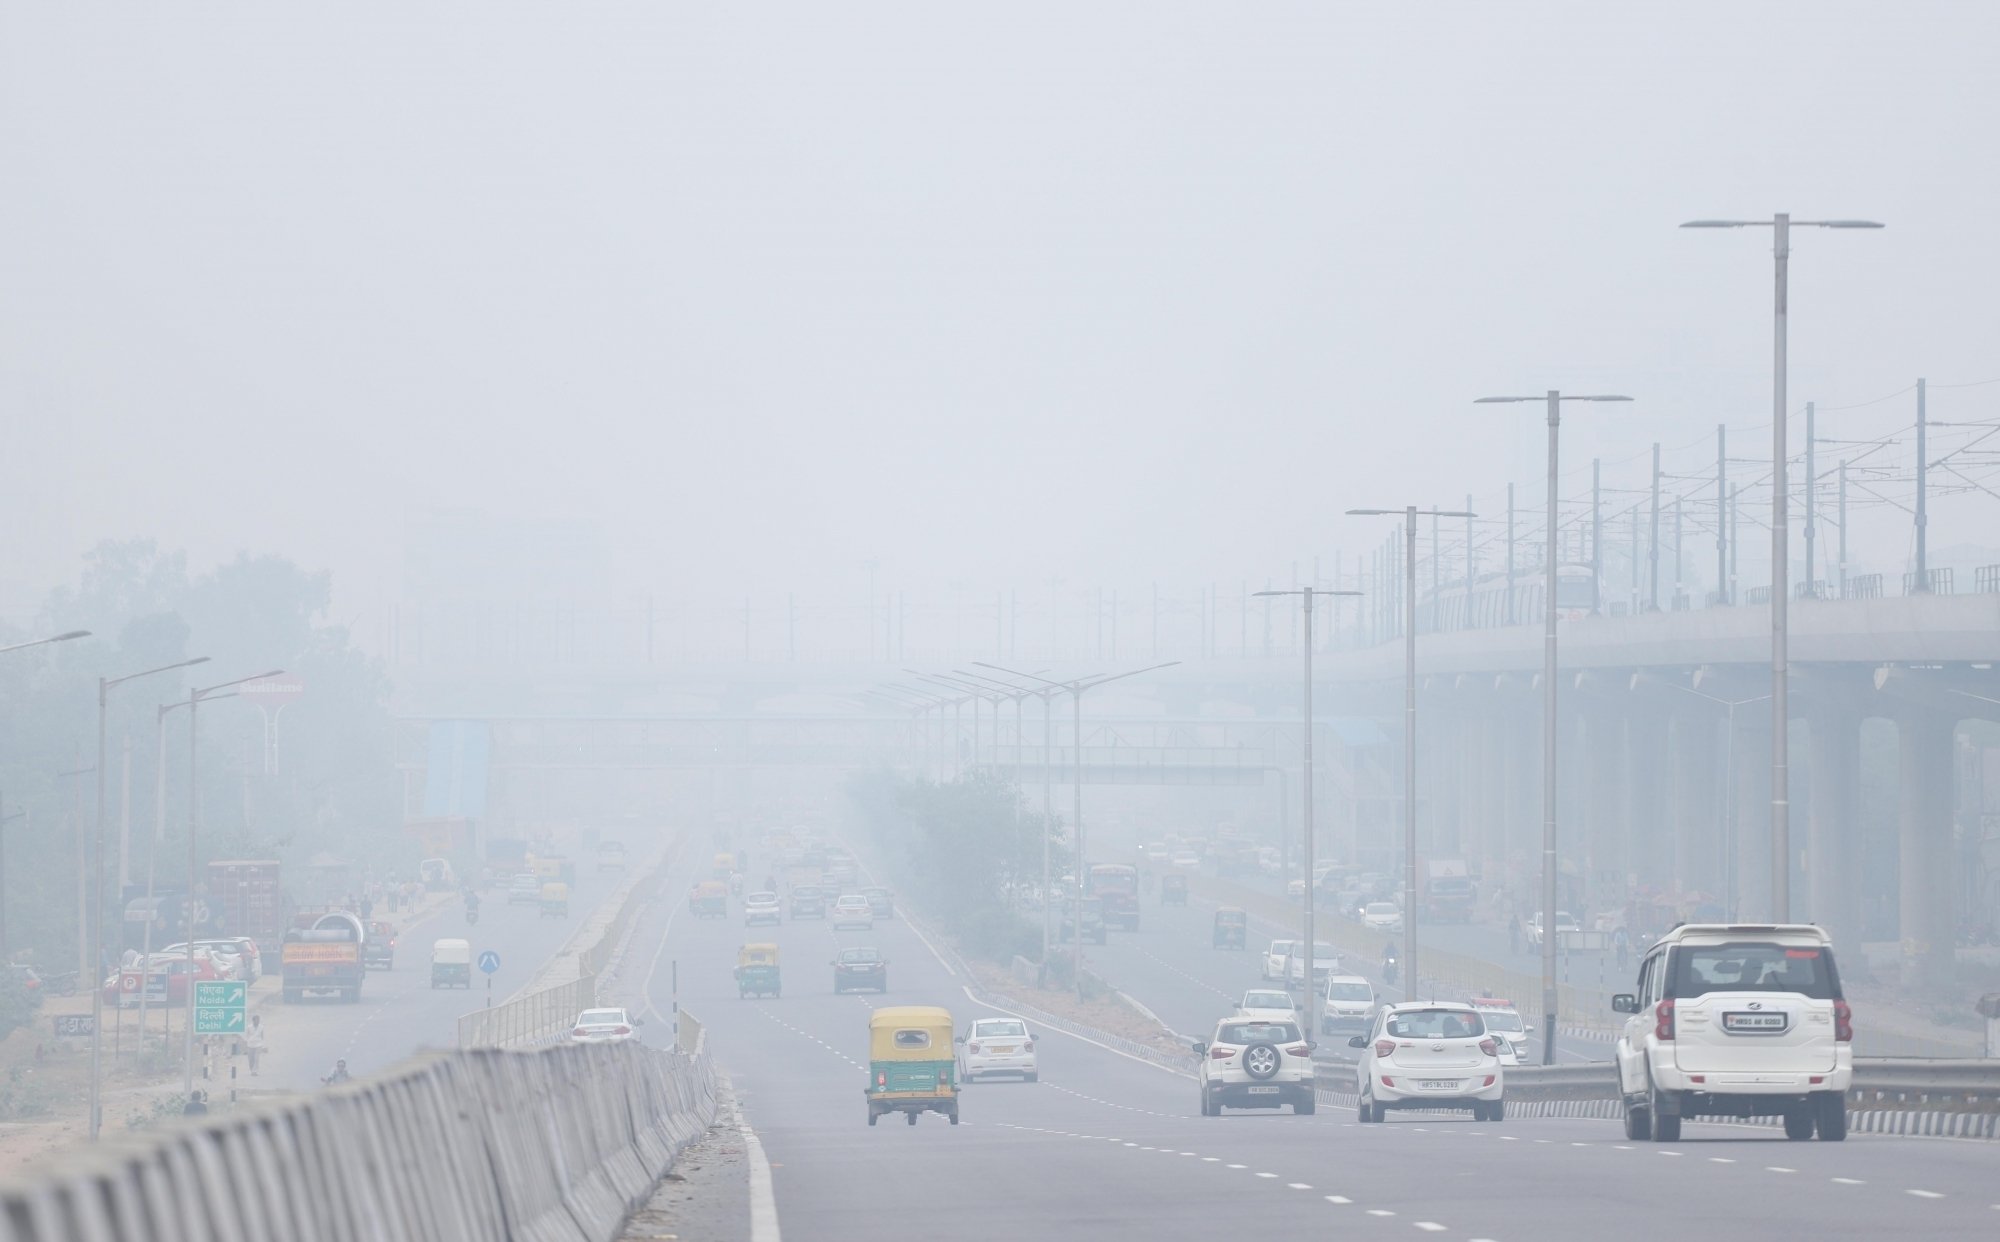 दिल्‍ली की वायु गुणवत्‍ता इस वक्त बहुत खराब श्रेणी में, वायु गुणवत्‍ता 334 रिकॉर्ड की गई